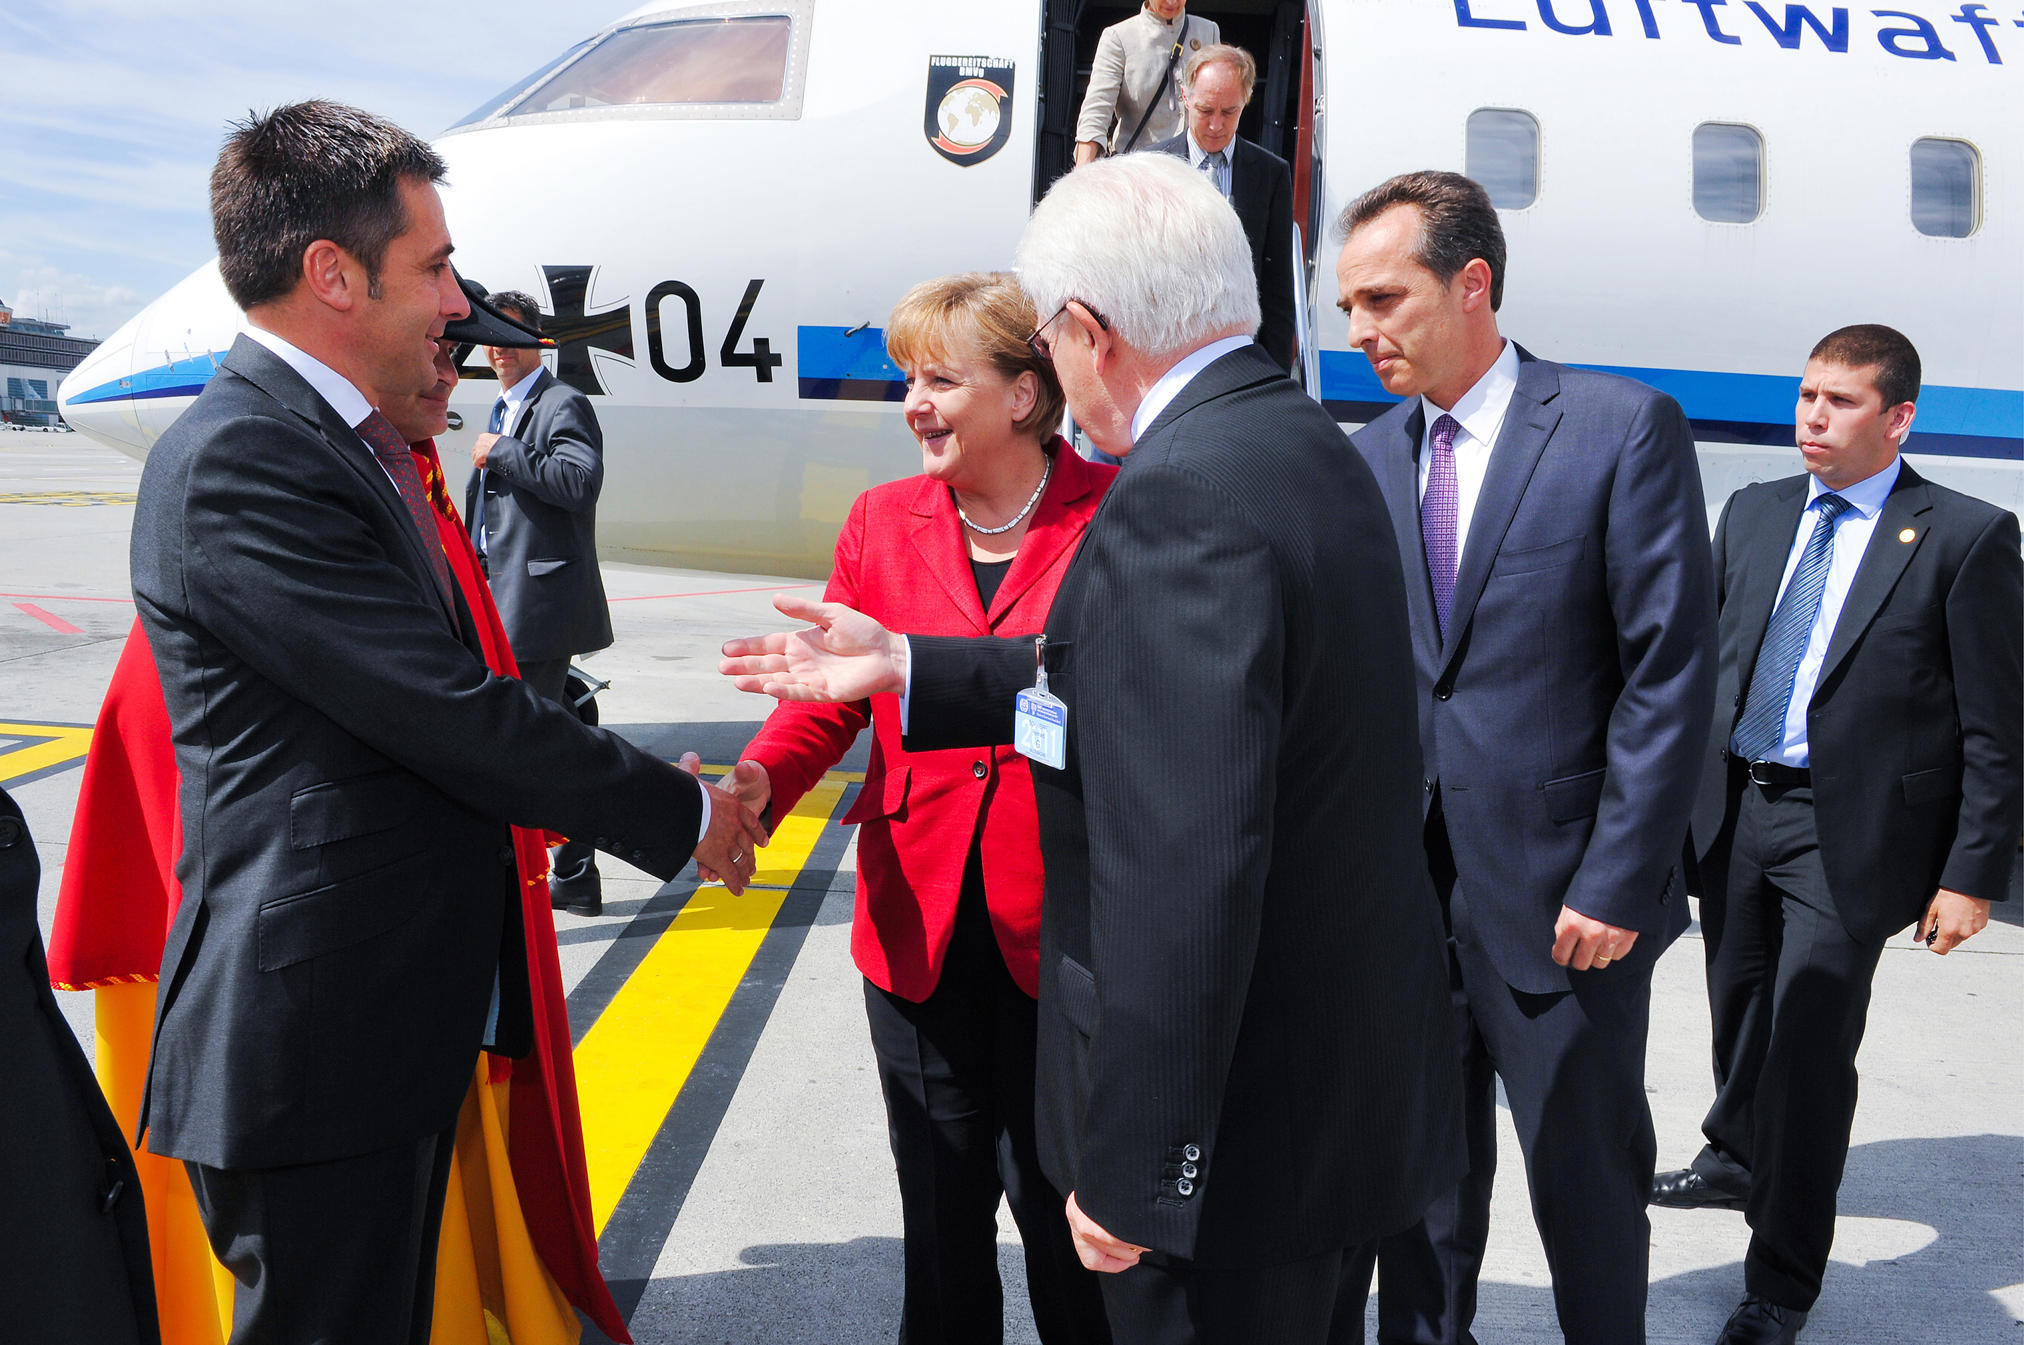 François Longchamp, presidente do governo de Genebra (à esq.), dá as boas vindas à chanceler alemã Angela Merkel